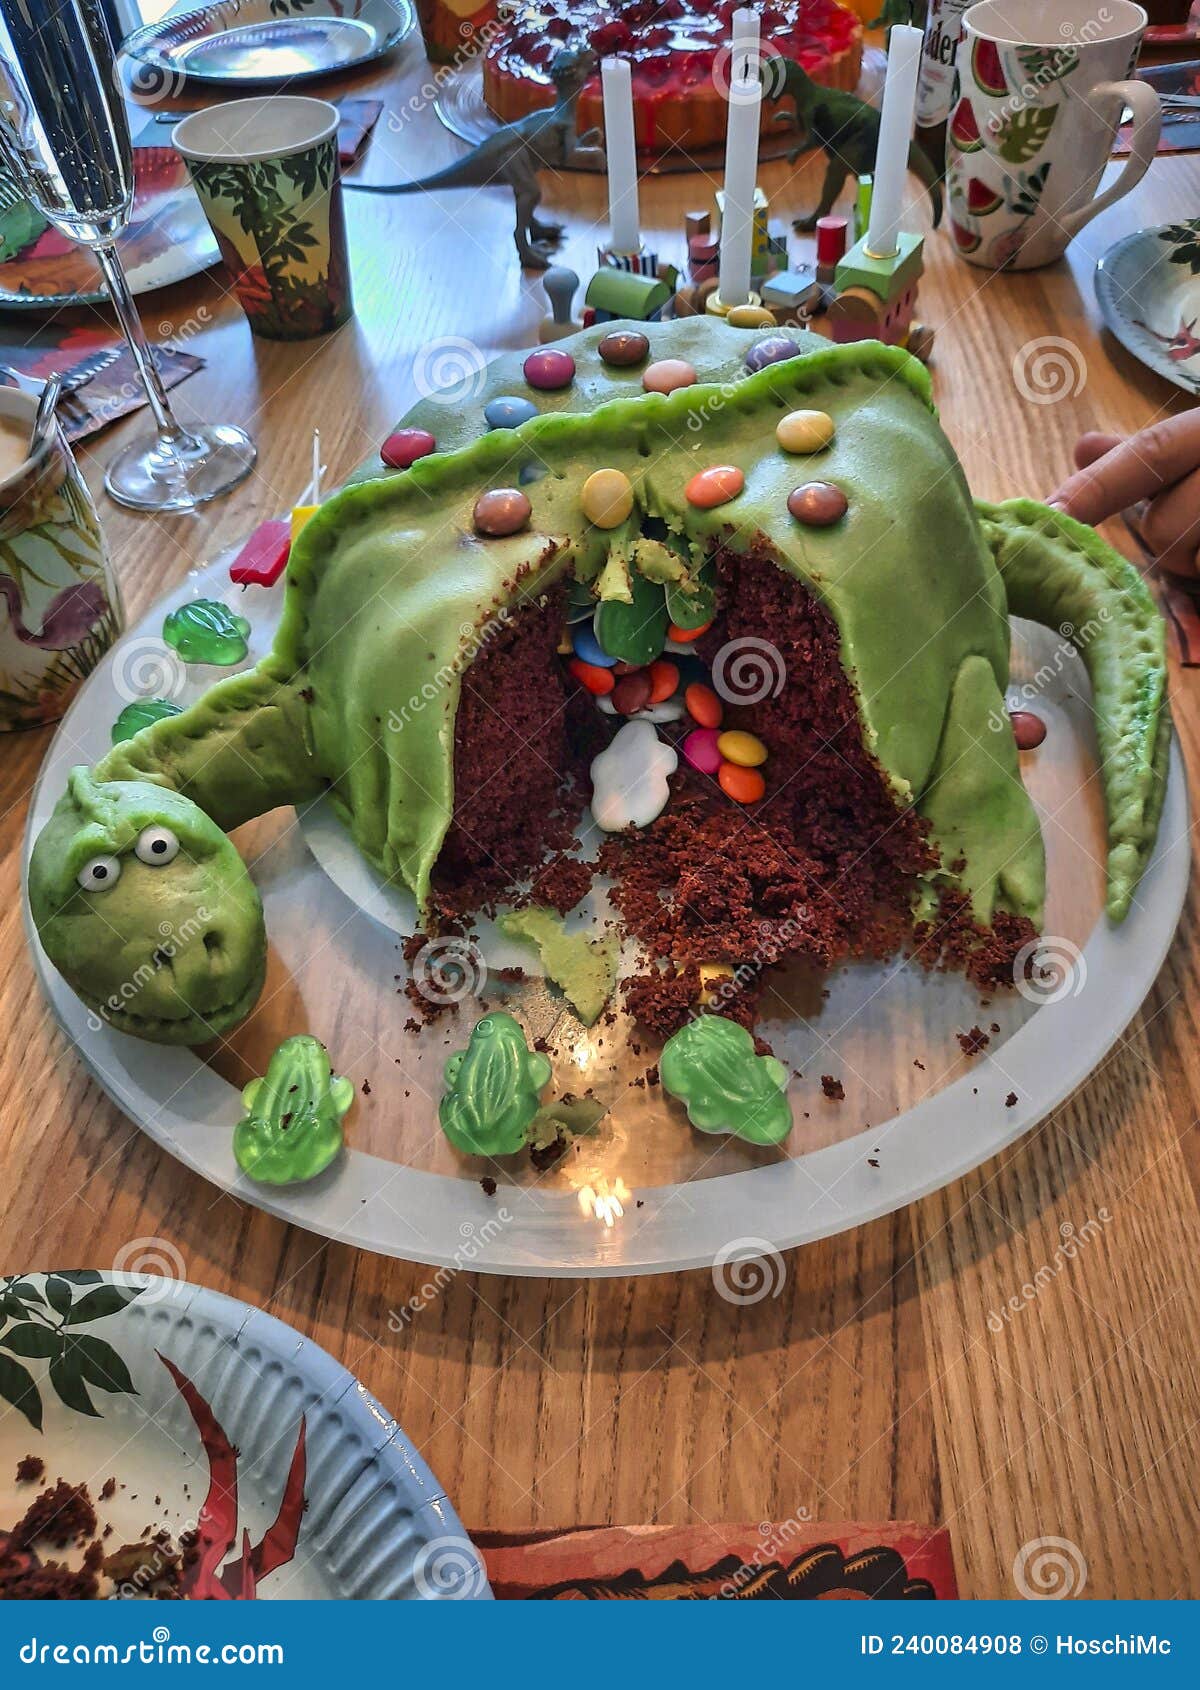 派对用品_恐龙主题蛋糕儿童恐龙生日派对装扮场地布置道具 - 阿里巴巴